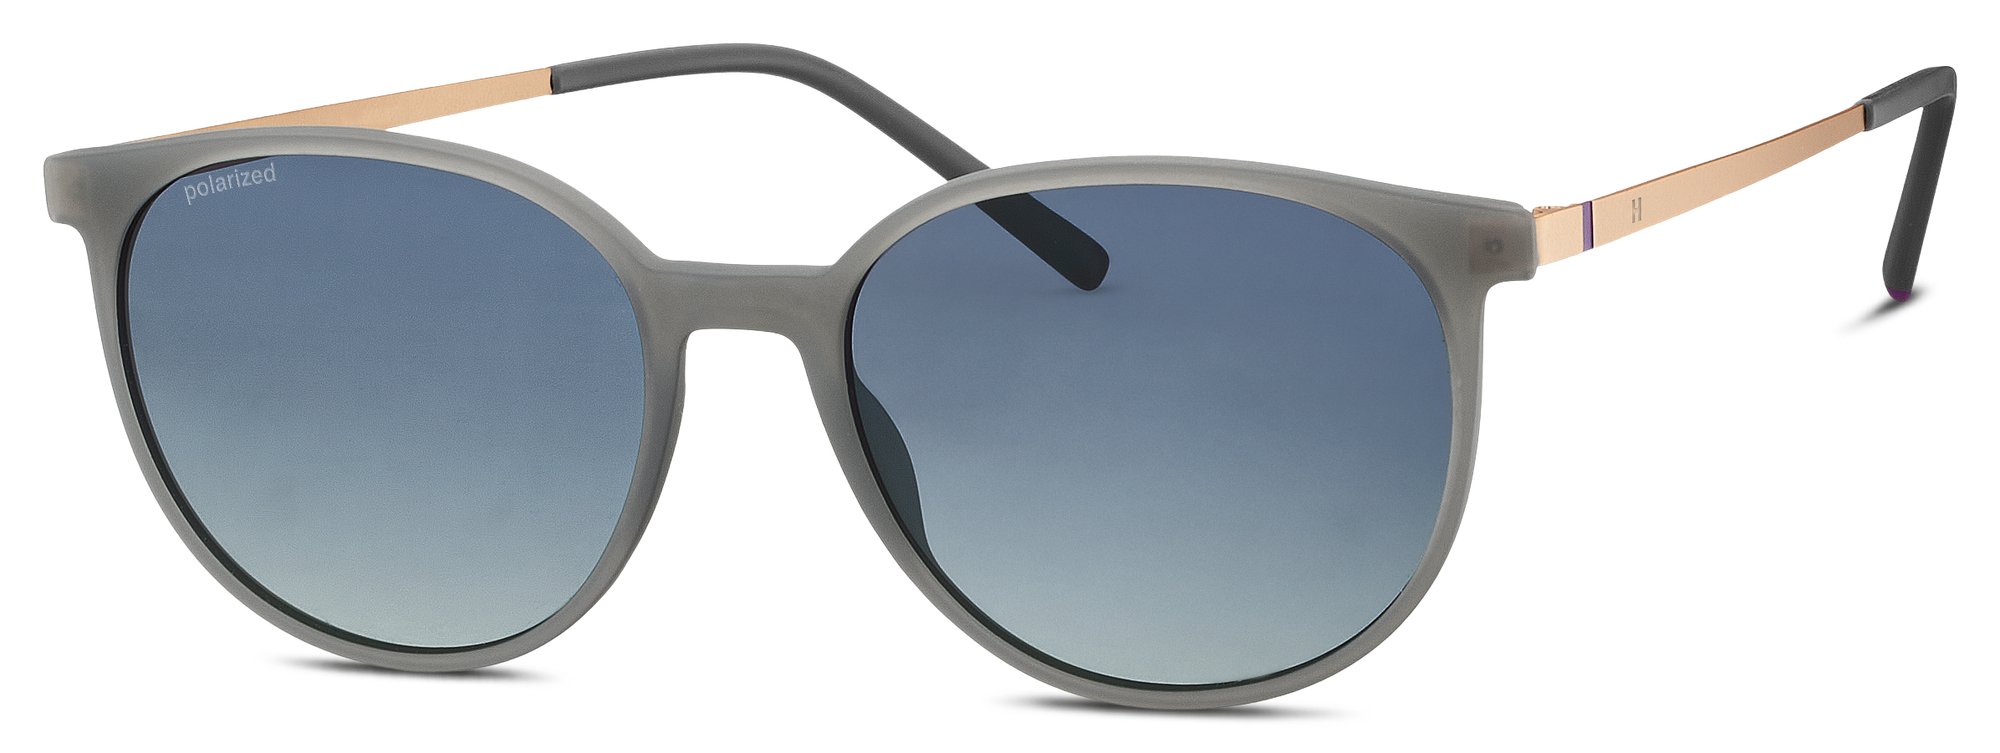 Das Bild zeigt die Sonnenbrille 586134 50 von der Marke Humphrey's in grau.